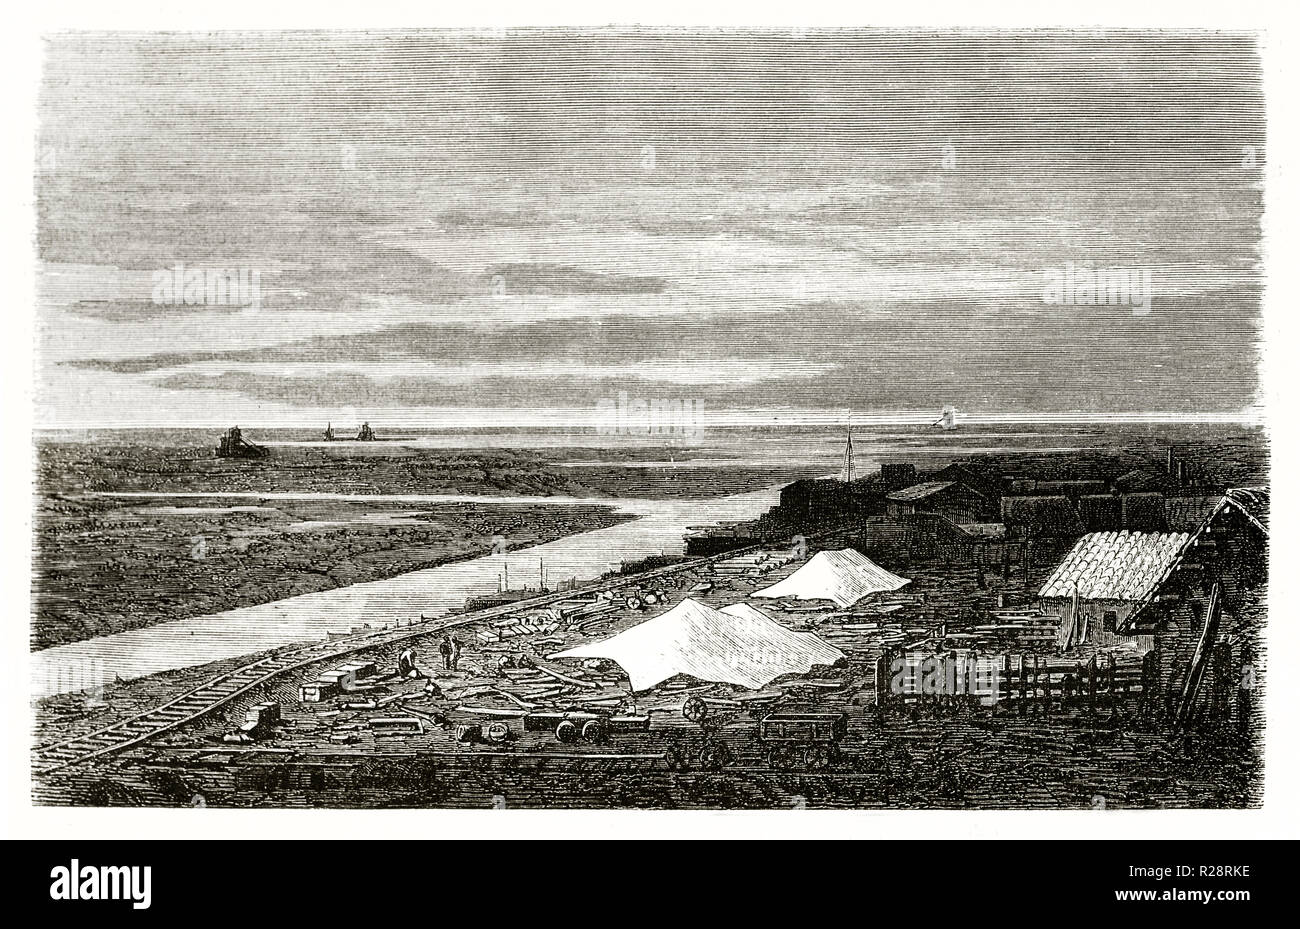 Vecchio vista Port-Said: Canale di Suez sito in costruzione vicino al Lago Manzala, Egitto. Di Grenet, publ. in Le Tour du Monde, Parigi, 1863 Foto Stock